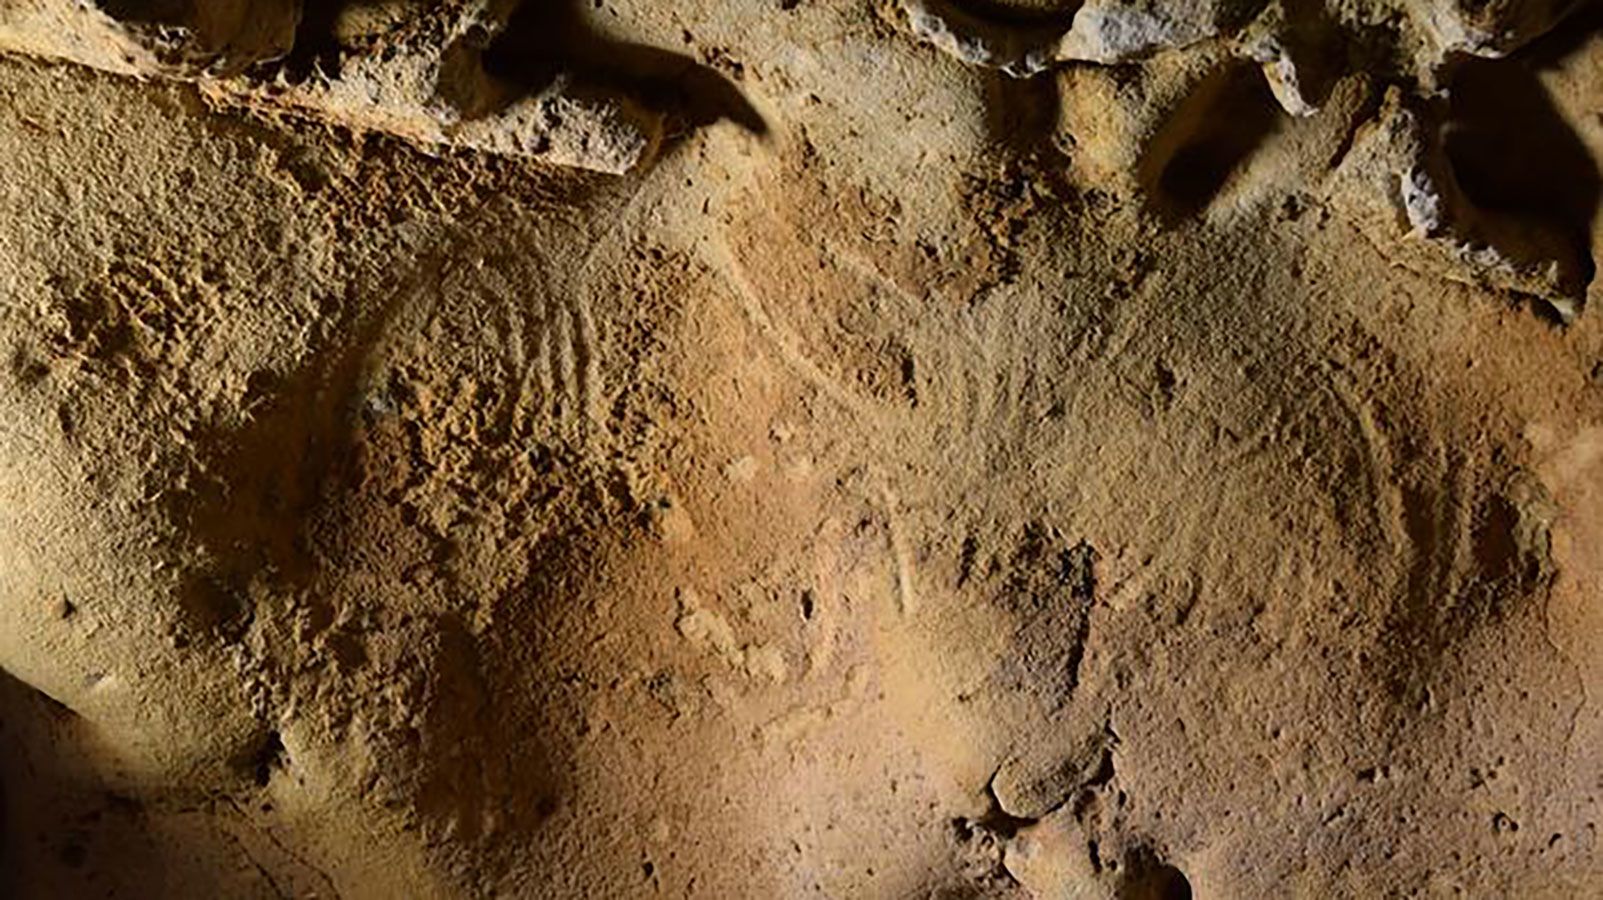 ਨਿਏਂਡਰਥਲਜ਼ ਨੇ 75,000 ਸਾਲ ਪਹਿਲਾਂ ਯੂਰਪ ਦੀ ਸਭ ਤੋਂ ਪੁਰਾਣੀ 'ਇਰਾਦਤਨ' ਉੱਕਰੀ ਕੀਤੀ, ਅਧਿਐਨ ਸੁਝਾਅ ਦਿੰਦਾ ਹੈ 2